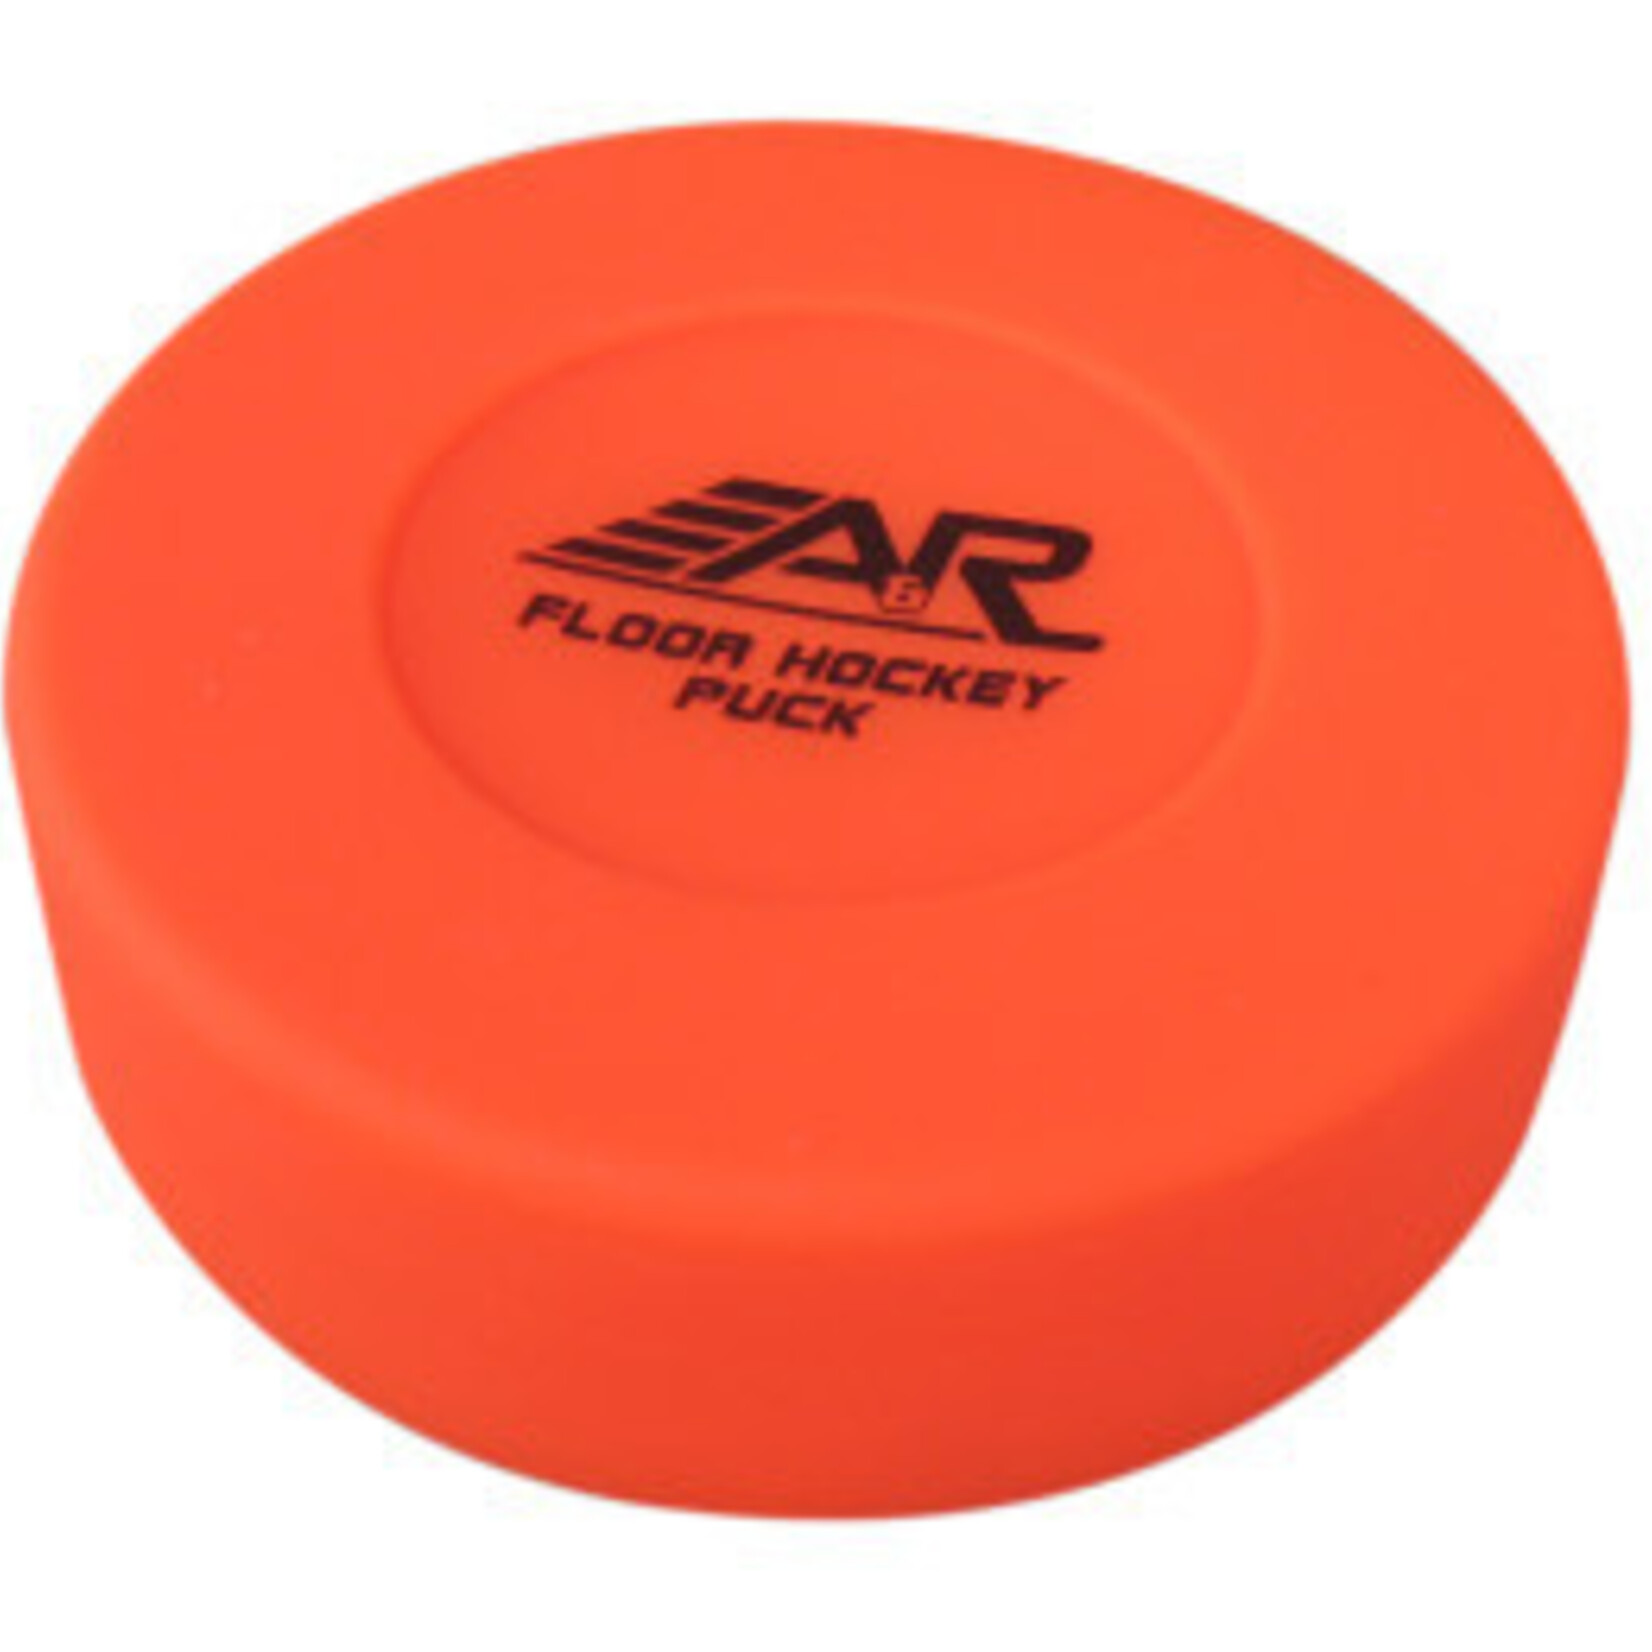 A&R A&R Street Hockey Puck (Orange)